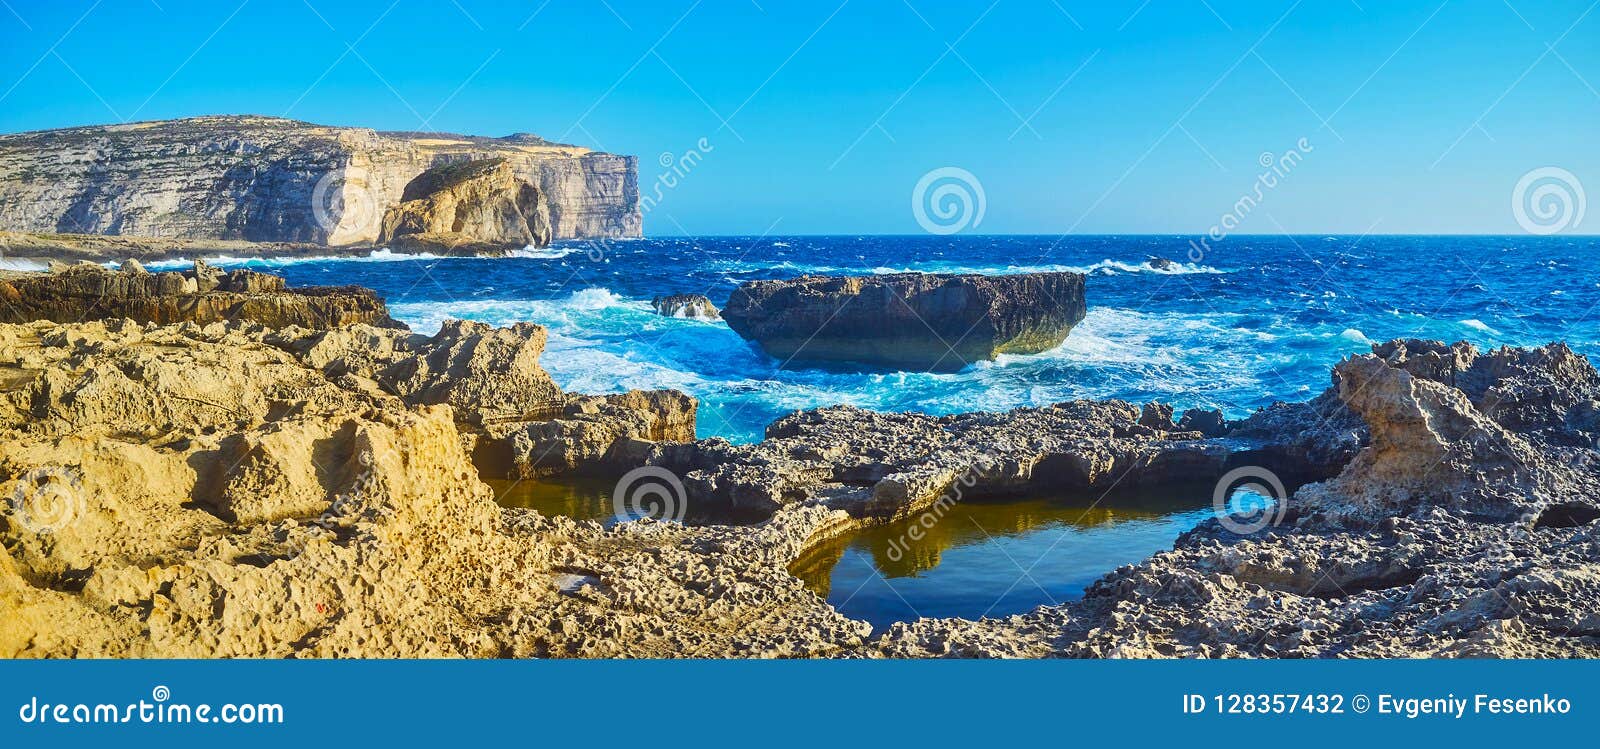 Enjoy Amazing Views on Dwejra Bay, Gozo, Malta Photo - of splash, 128357432